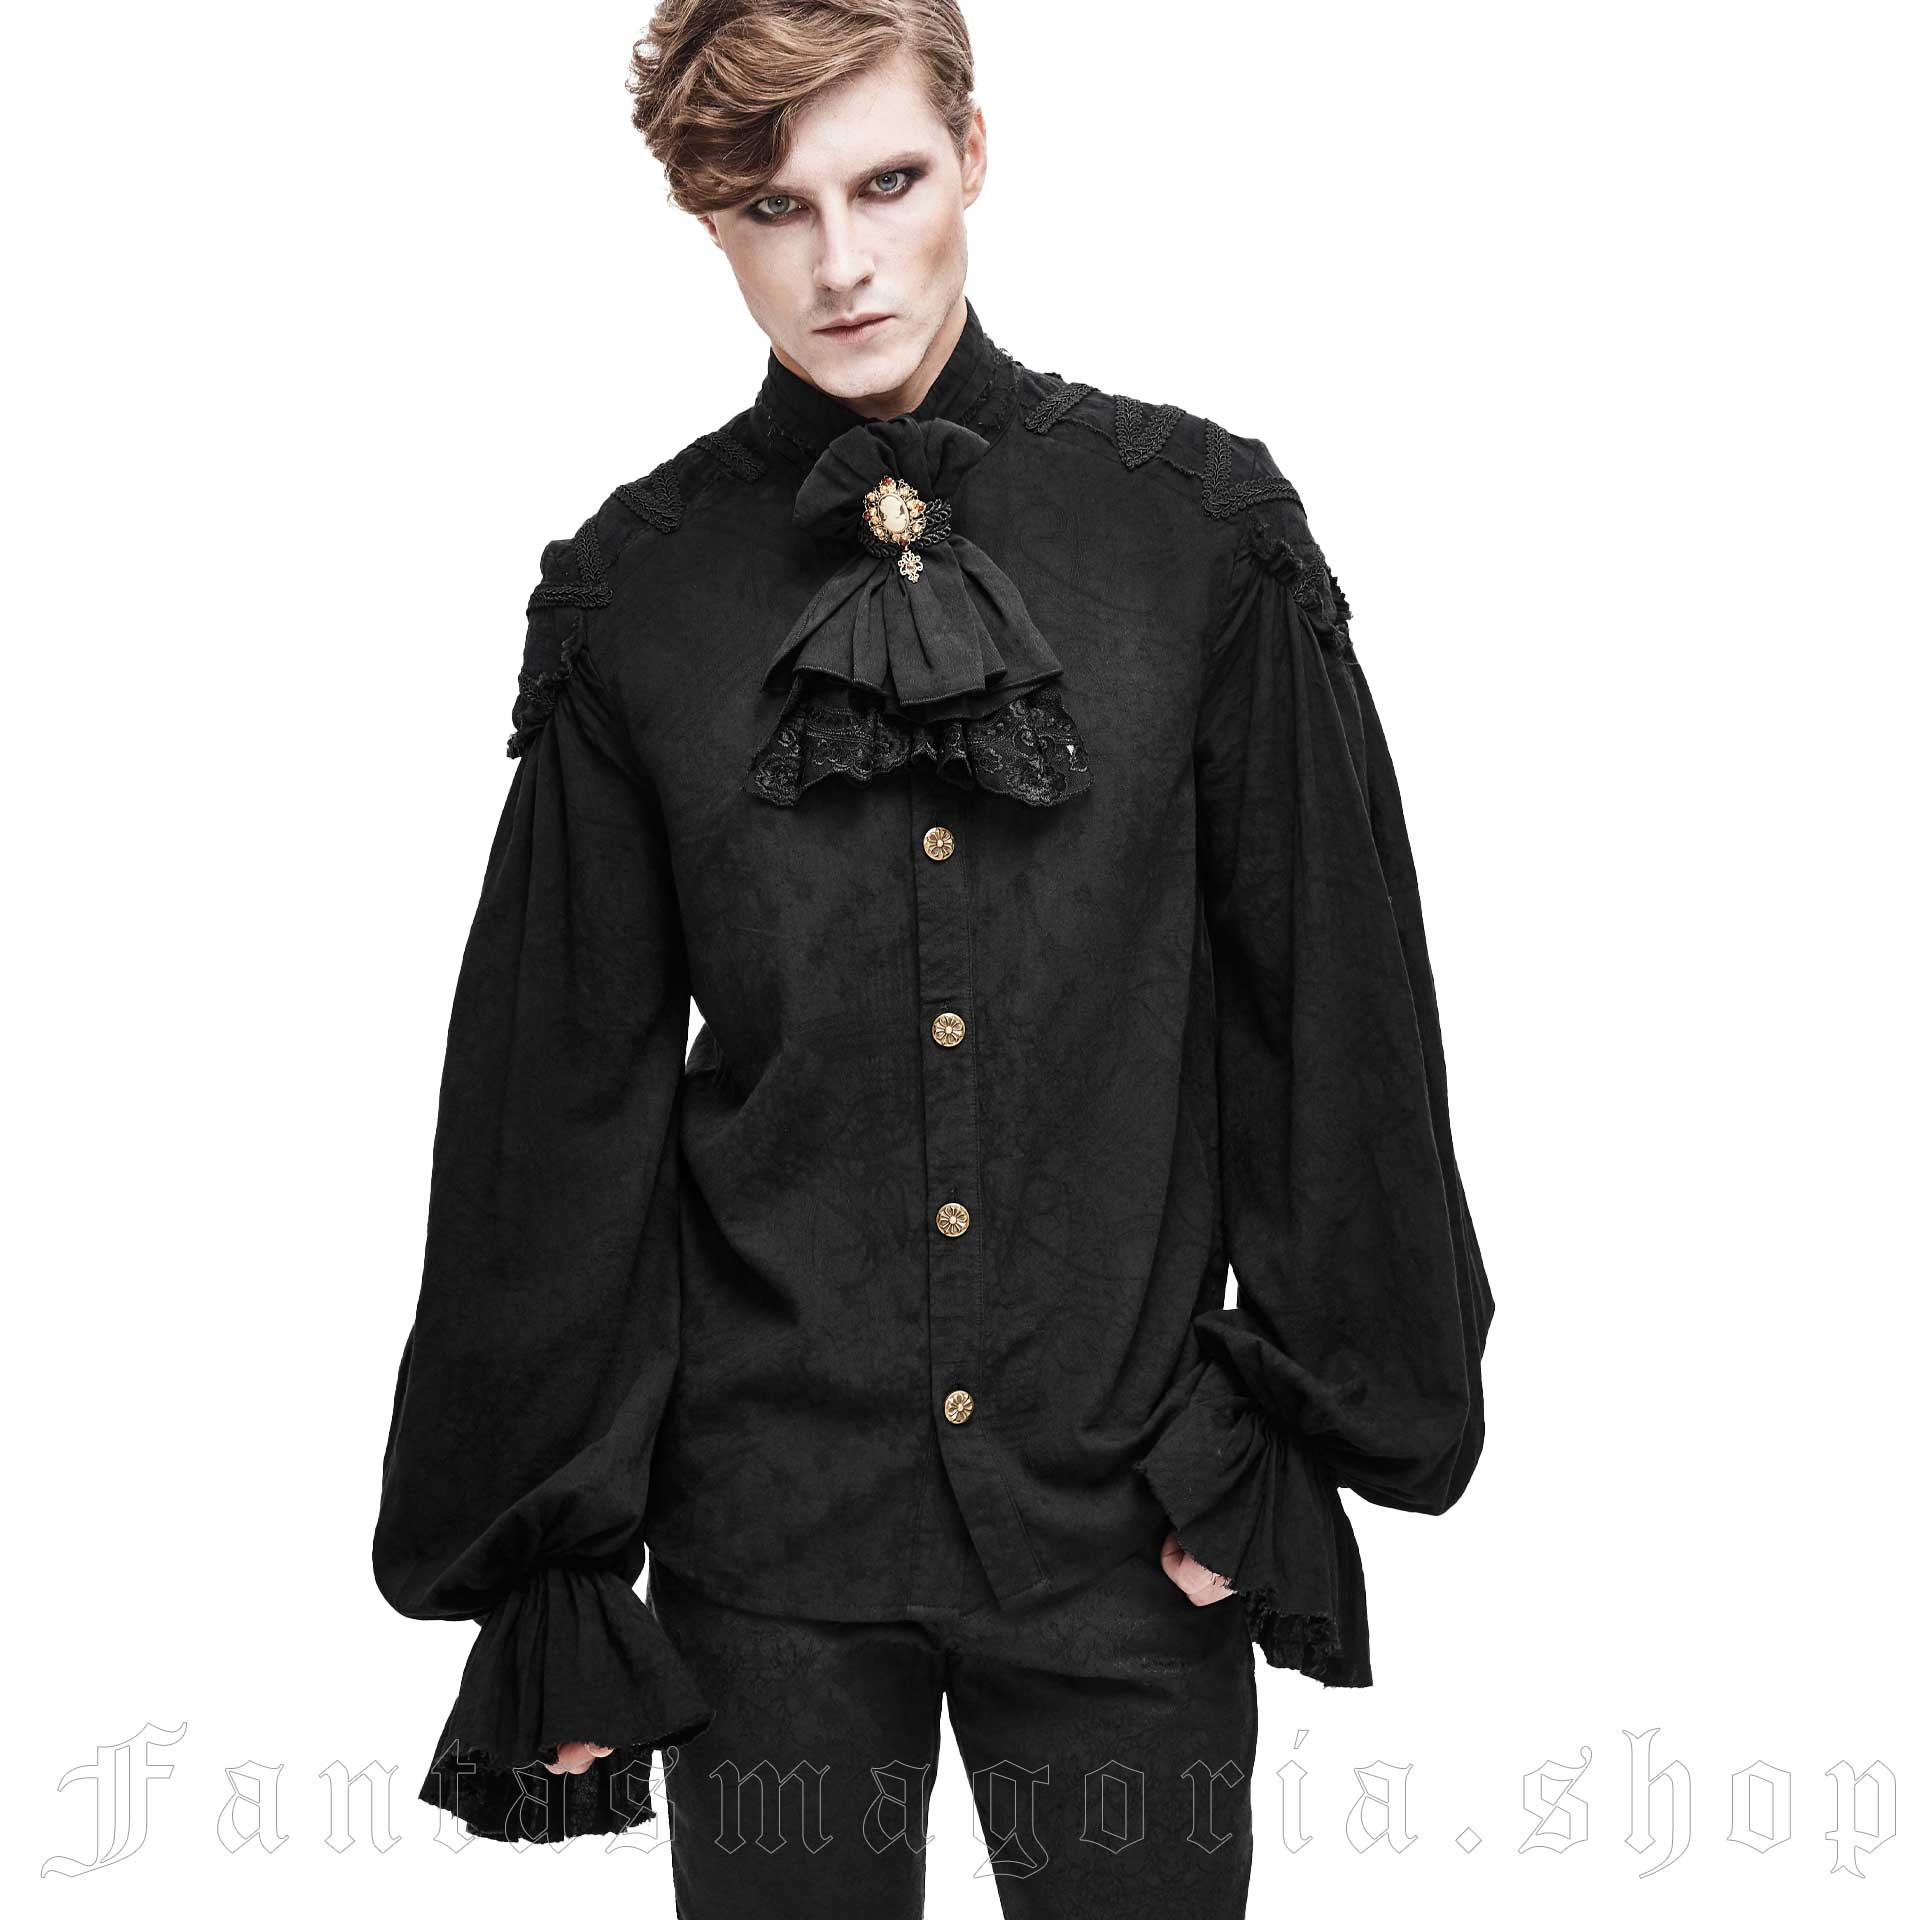 Pierrot Black Shirt SHT04801 by DEVIL FASHION brand